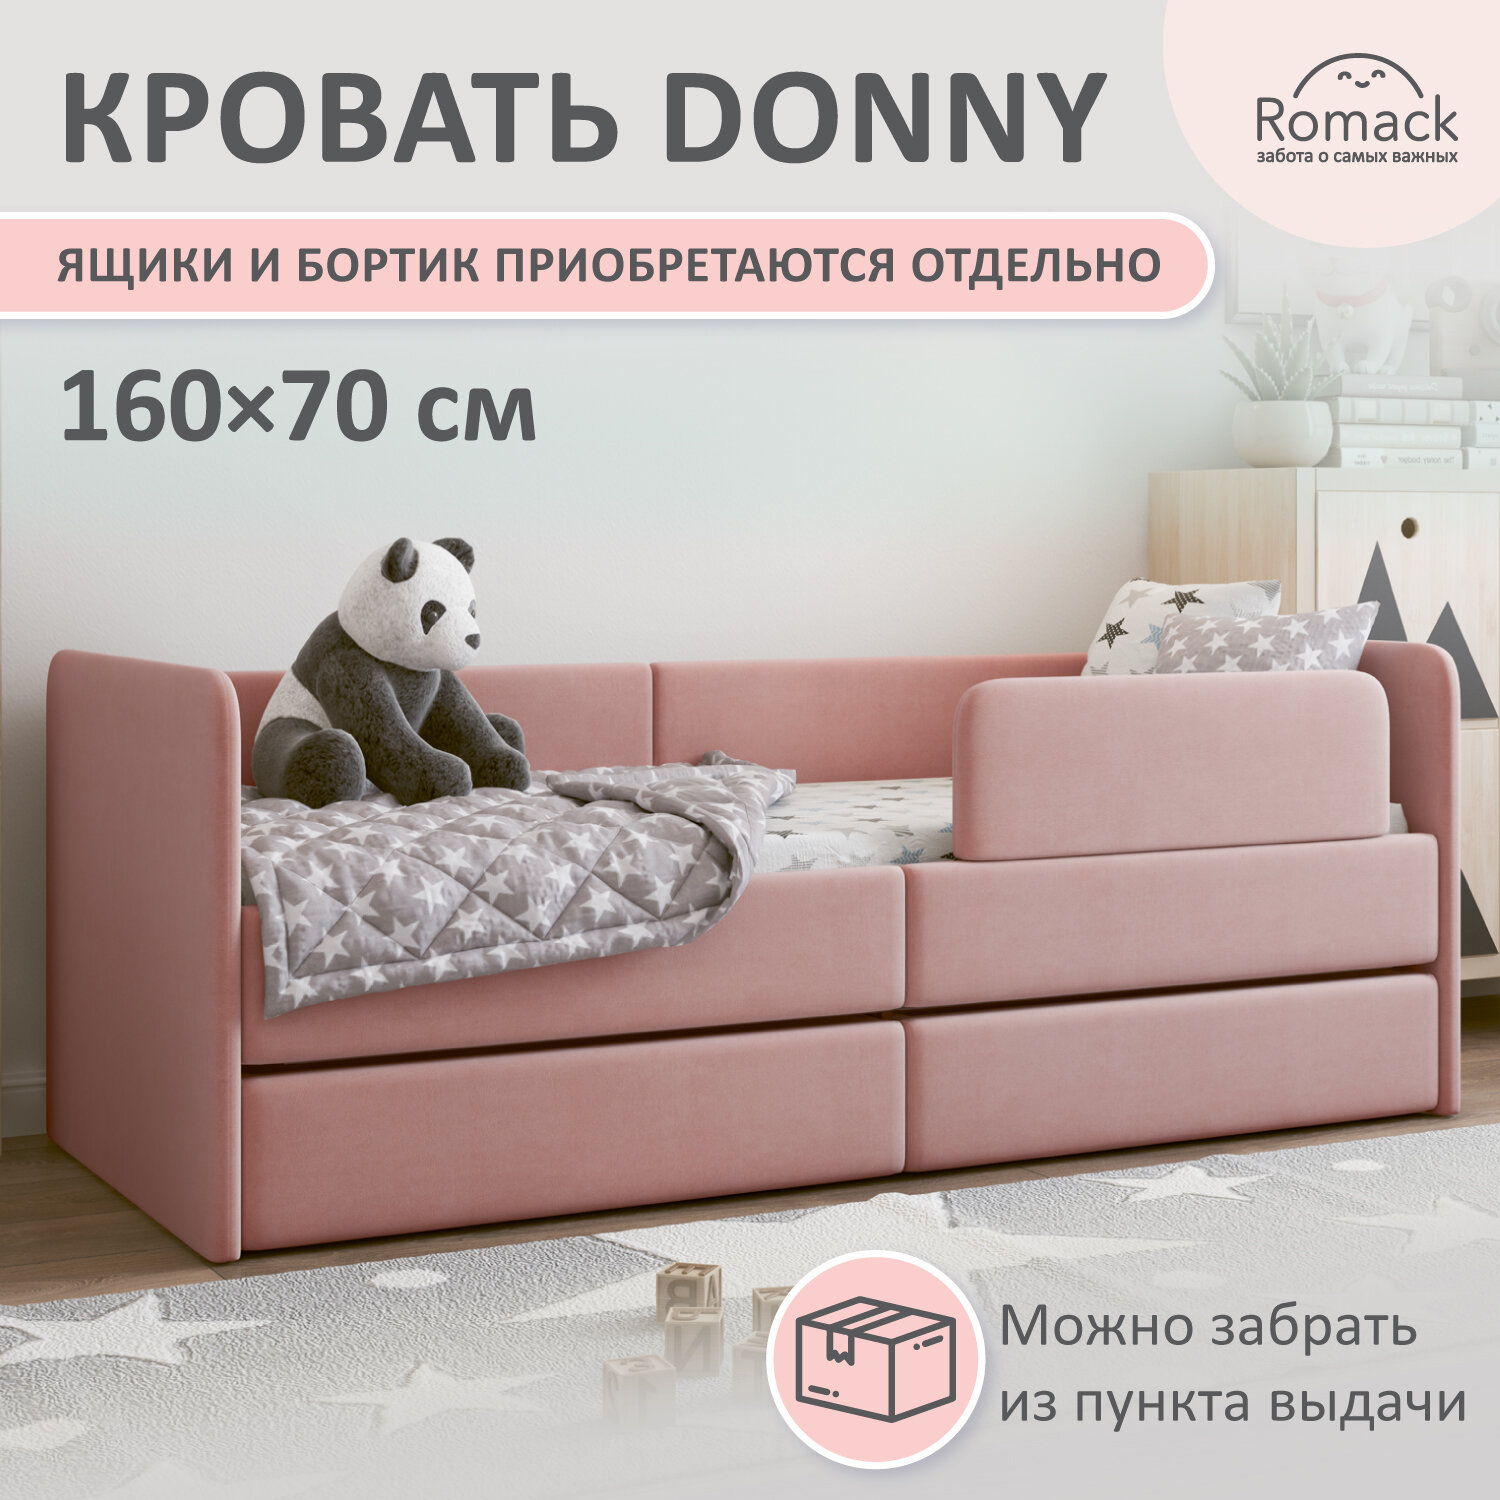 Кровать детская Romack Donny 160х70 с ортопедическим основанием, мягким изголовьем, роза